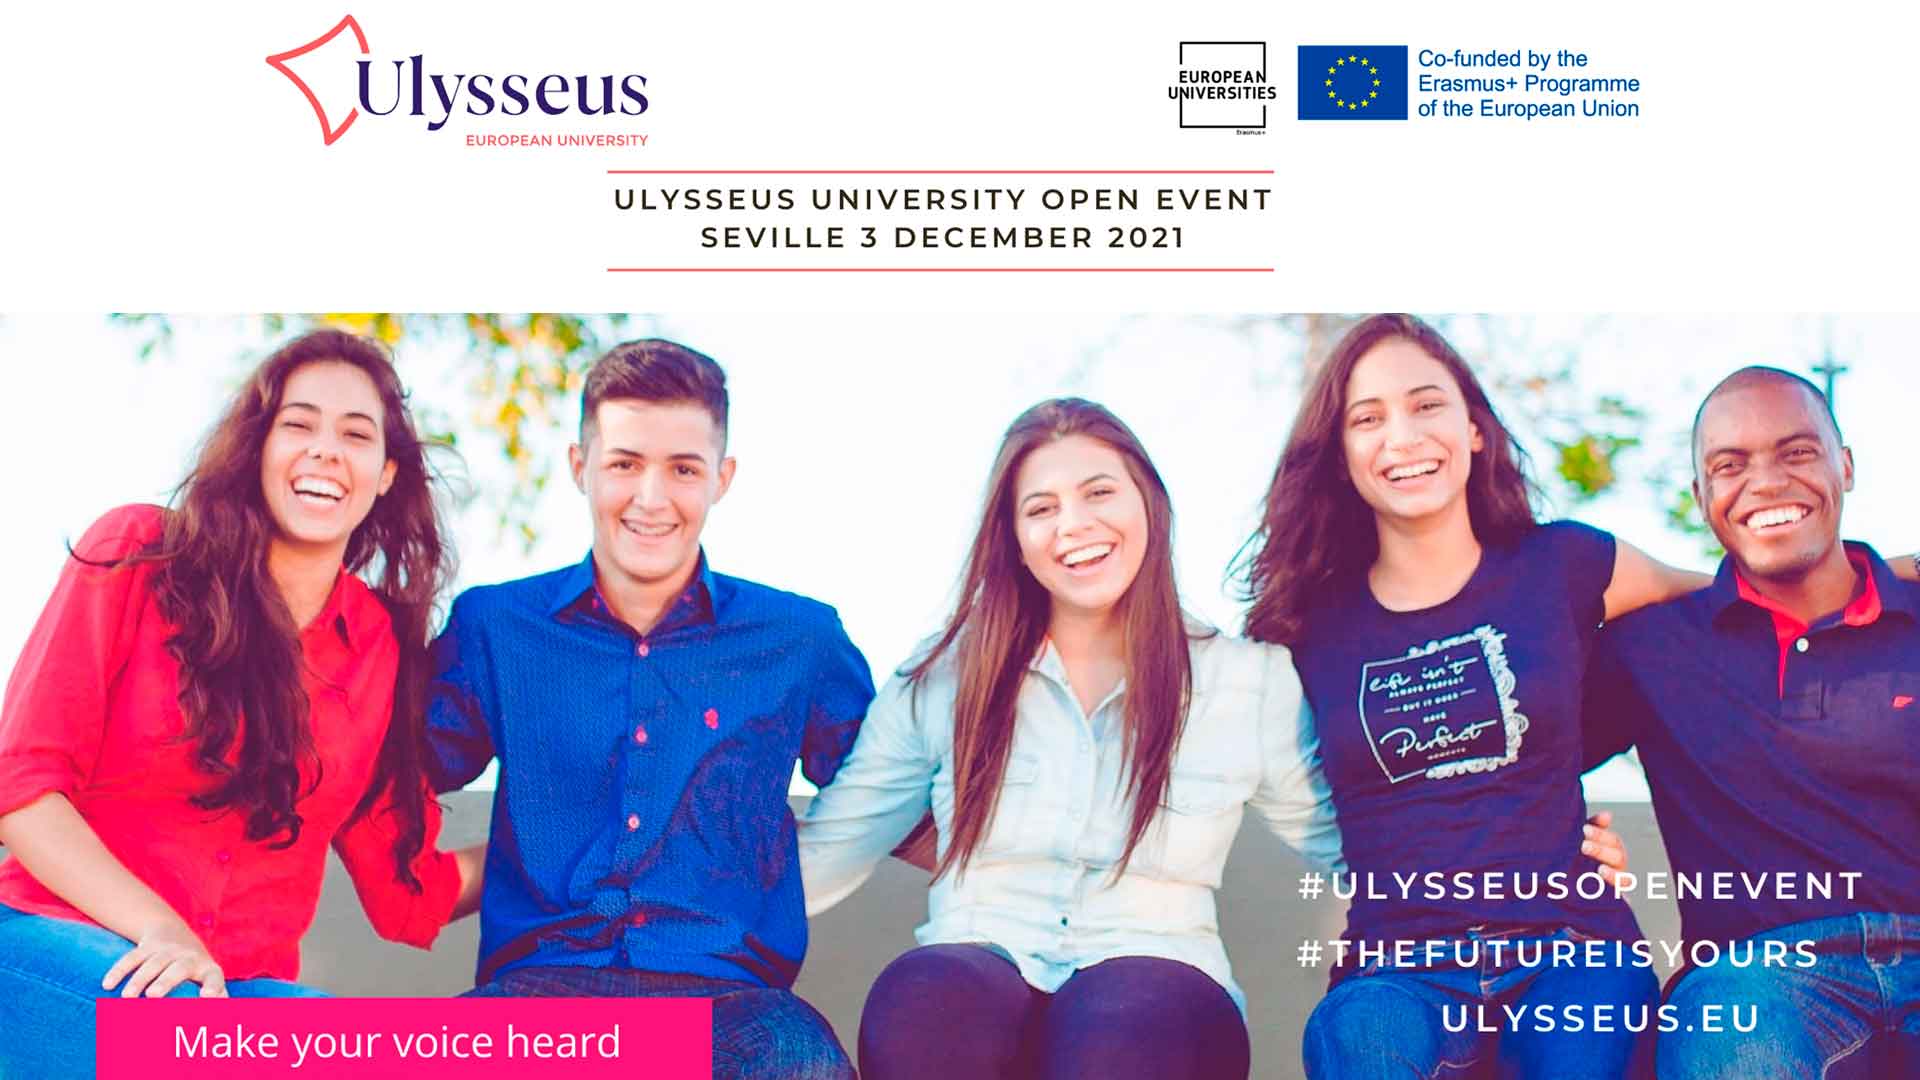 L’Università Europea Ulysseus organizza un open event per studentesse e studenti per dare voce alle loro opinioni su argomenti chiave dell’istruzione prima della celebrazione della Conferenza sul futuro dell’Europa prevista per la prossima primavera